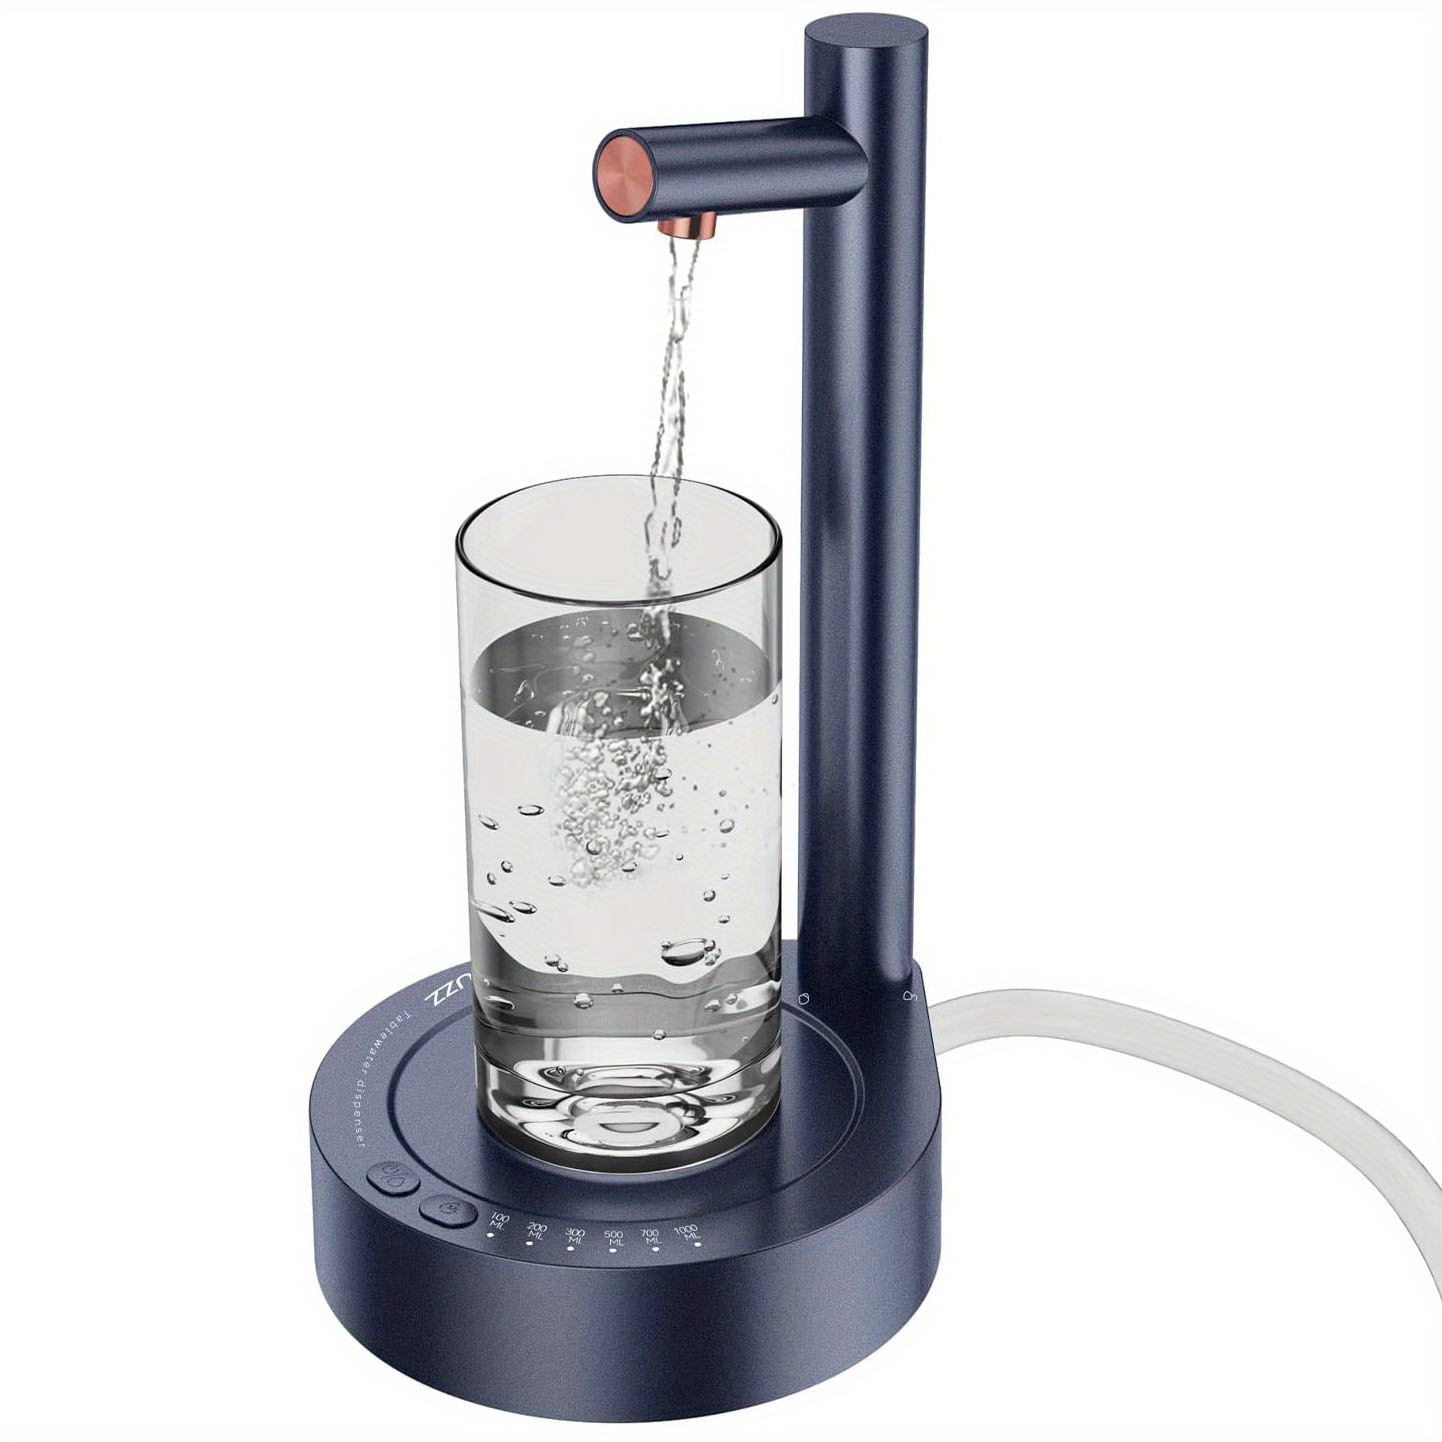 Wasserflaschenpumpe 5 Gallonen Wasserflaschenspender Usb-aufladung  Automatisk Trinkwasserpumpe Tragbarer Elektrischer Wasserspender  Wasserflaschensc b611